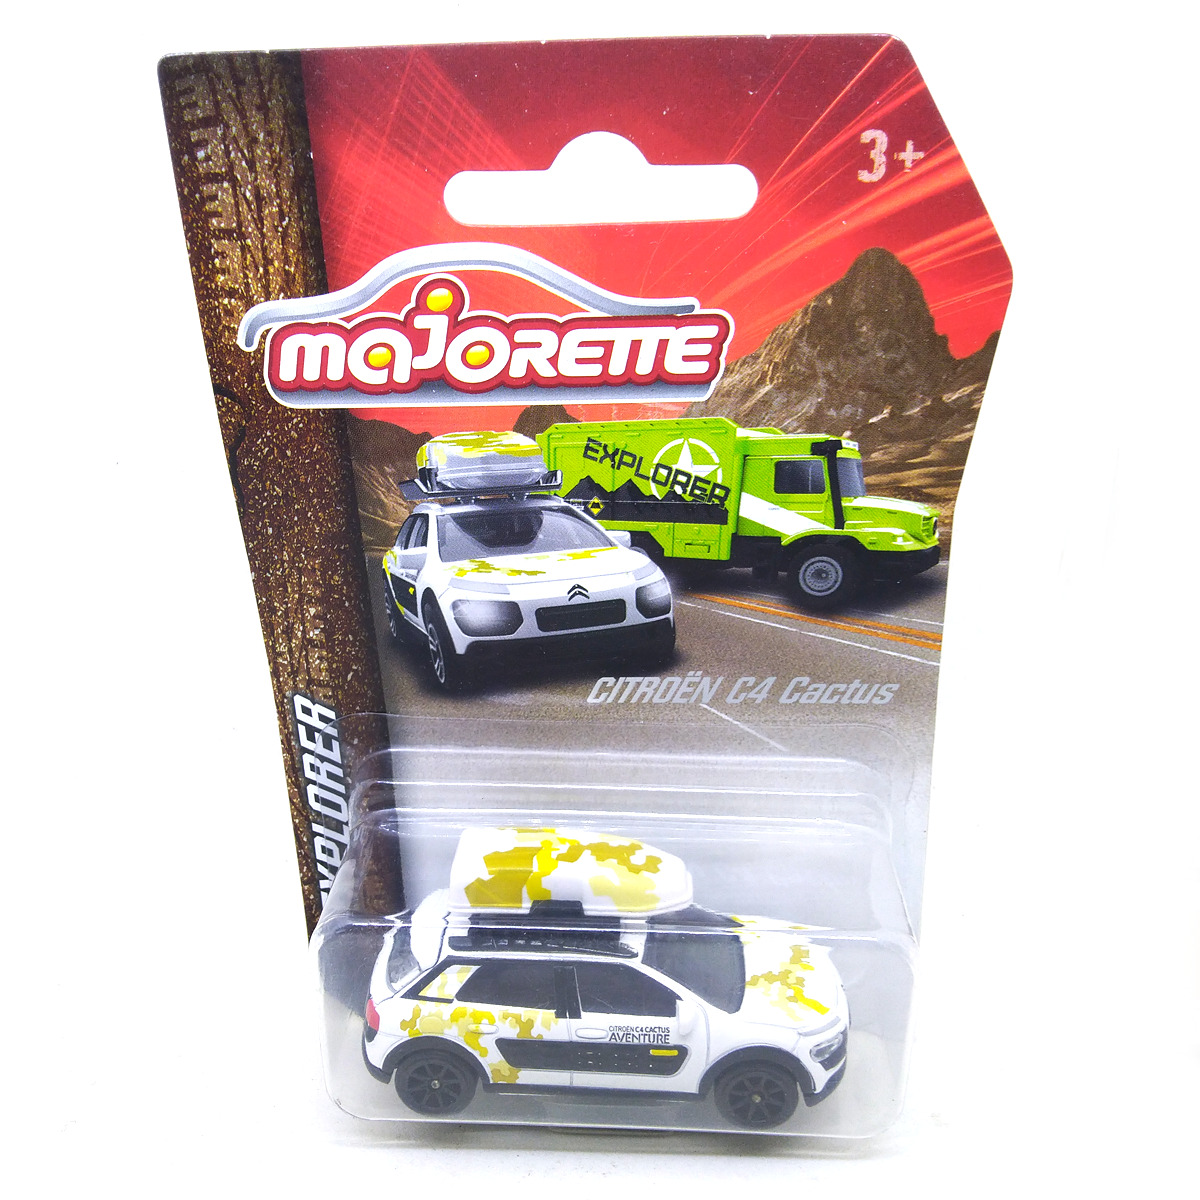 Majorette Citroen C4 Cactus car diecast model toys for kids collection 1:64 